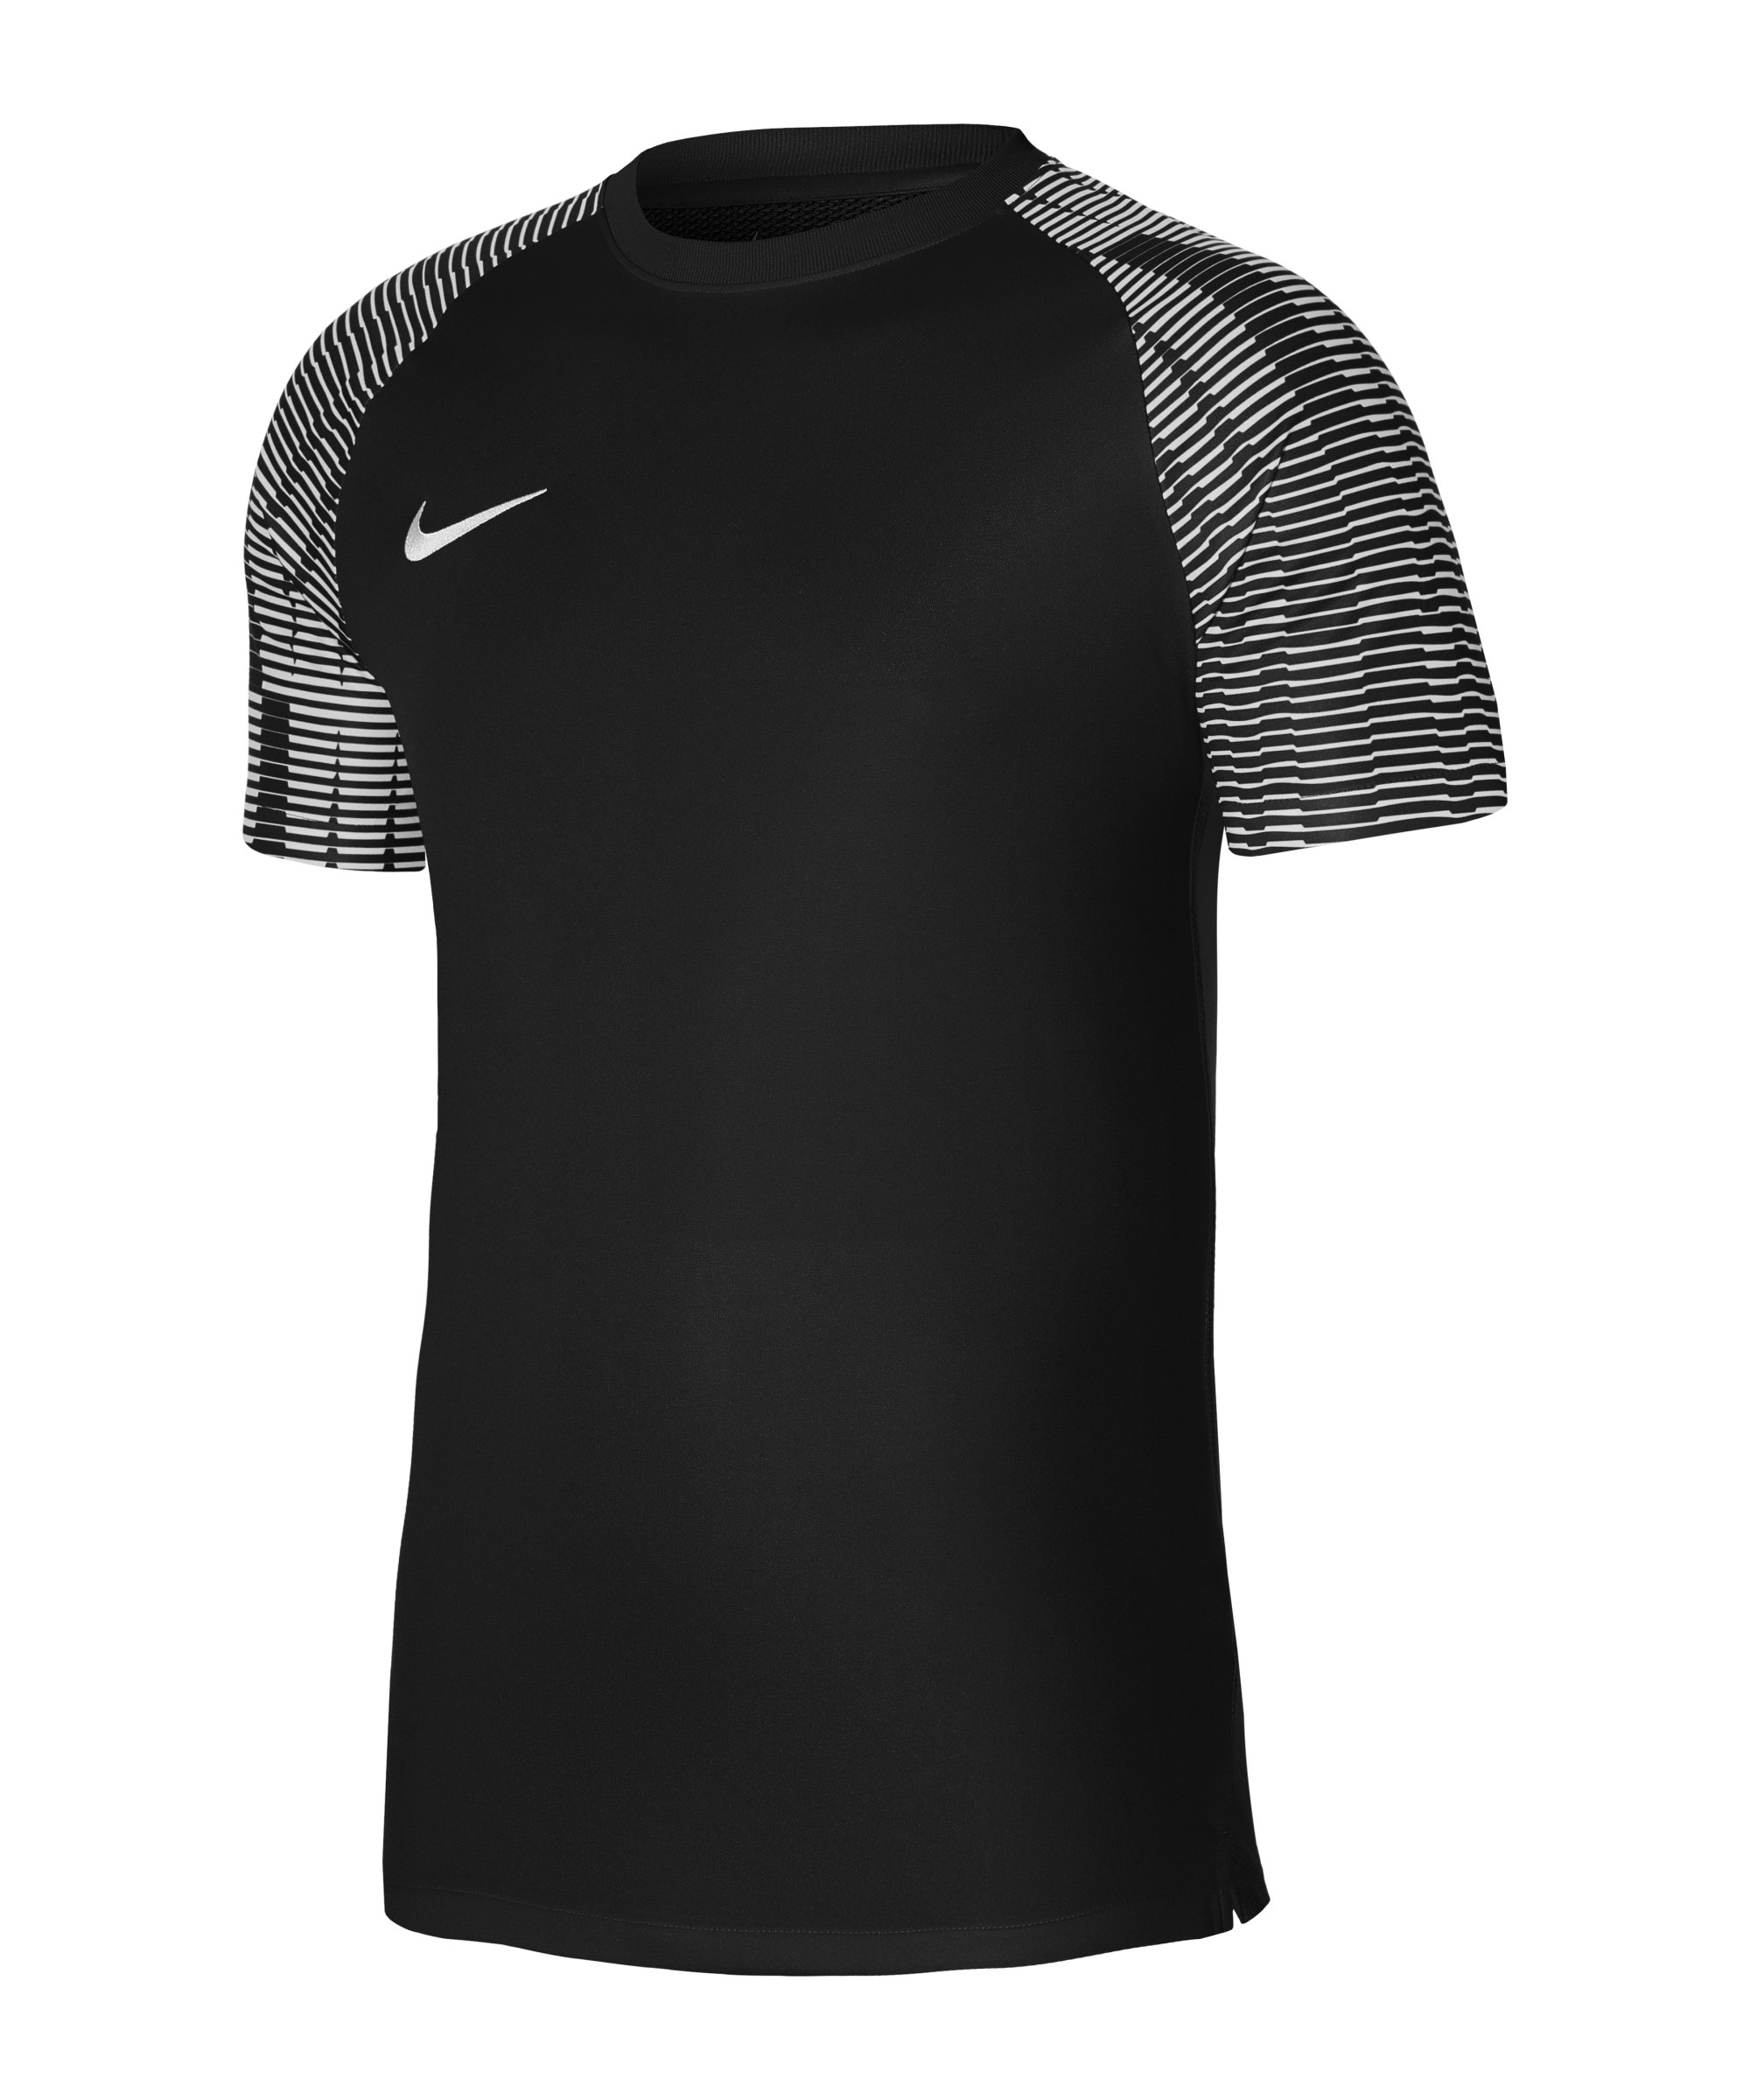 Nike Academy Trikot Schwarz Weiss F010 - schwarz